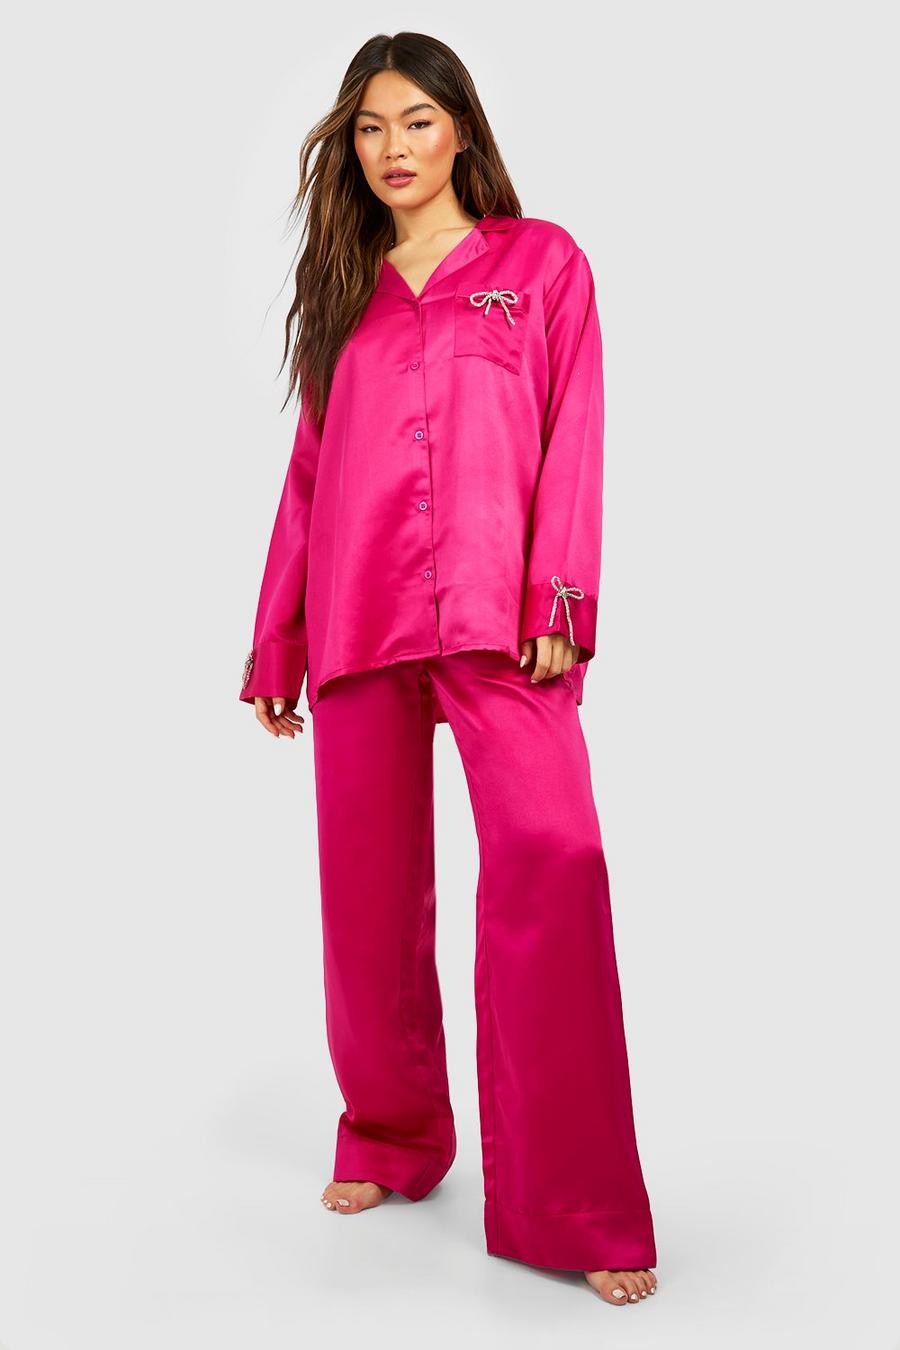 Ensemble premium avec chemise à nœud strassé et pyjama large, Hot pink